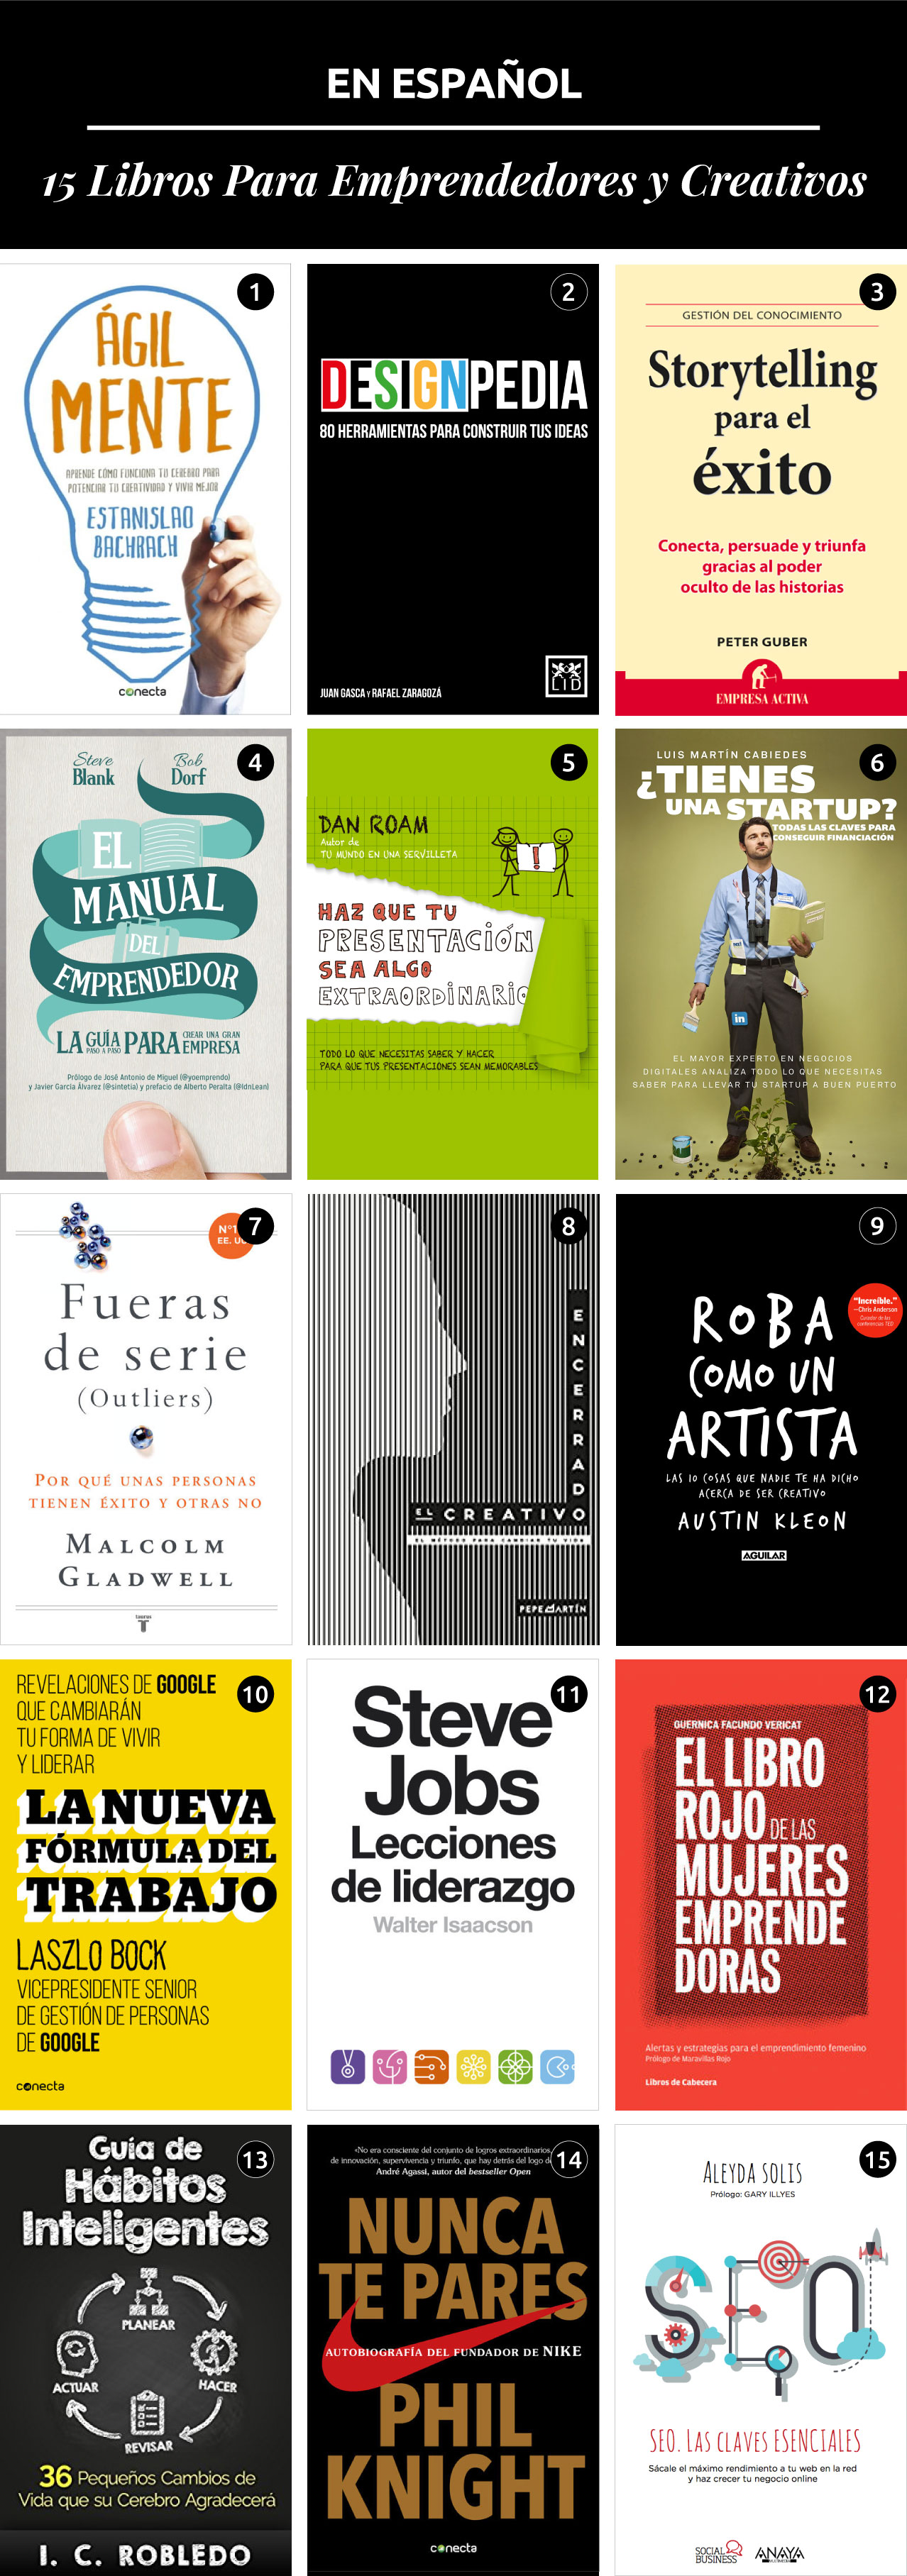 15 Libros Para Creativos y Emprendedores En Español — The Key Item